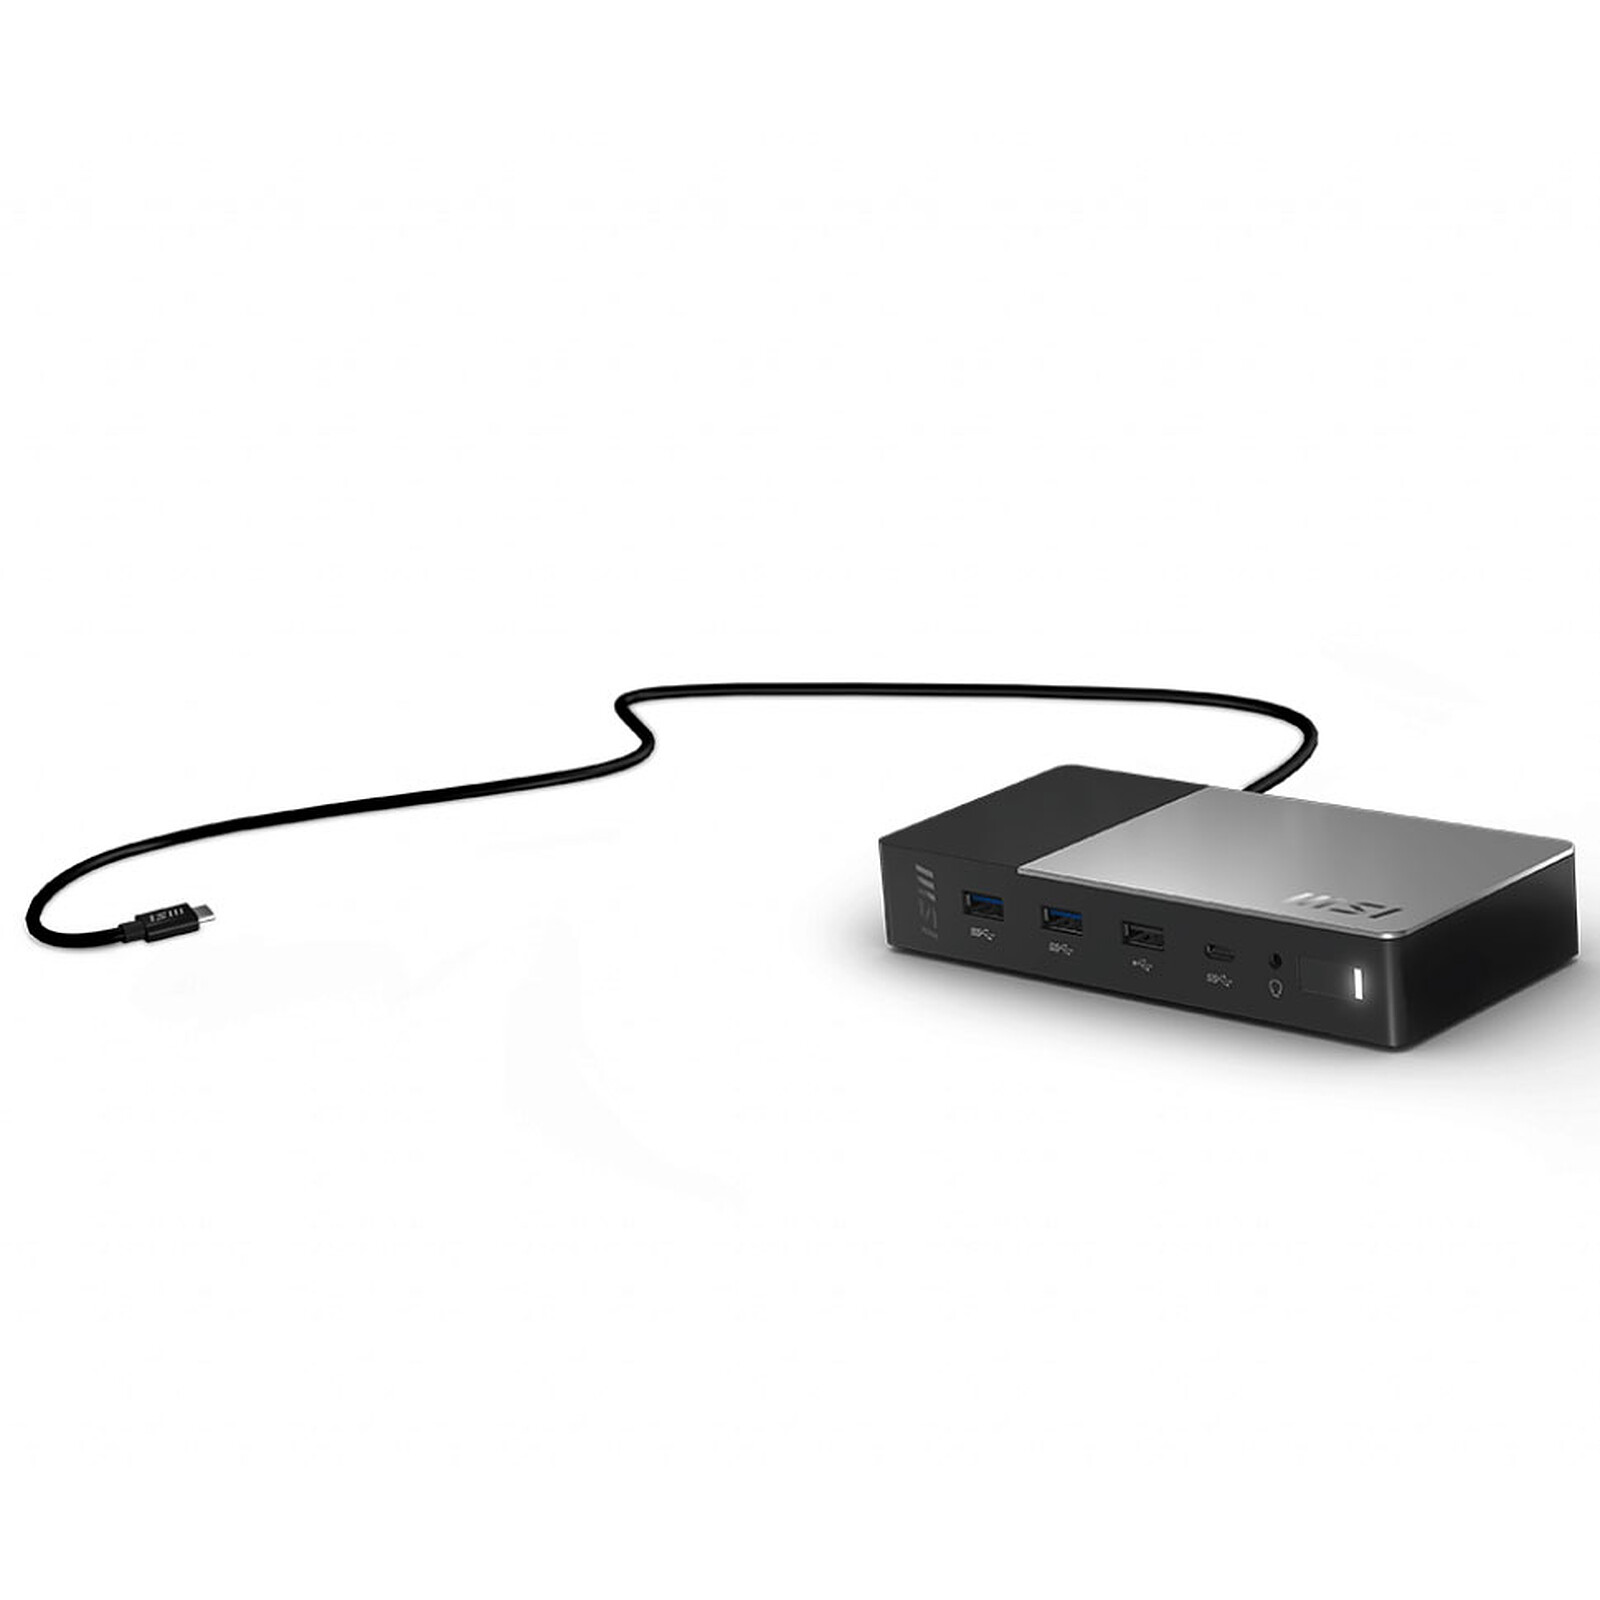 HP USB-C/A Universal Dock G5 (5TW10ET#ABB) - Station d'accueil PC portable  - Garantie 3 ans LDLC